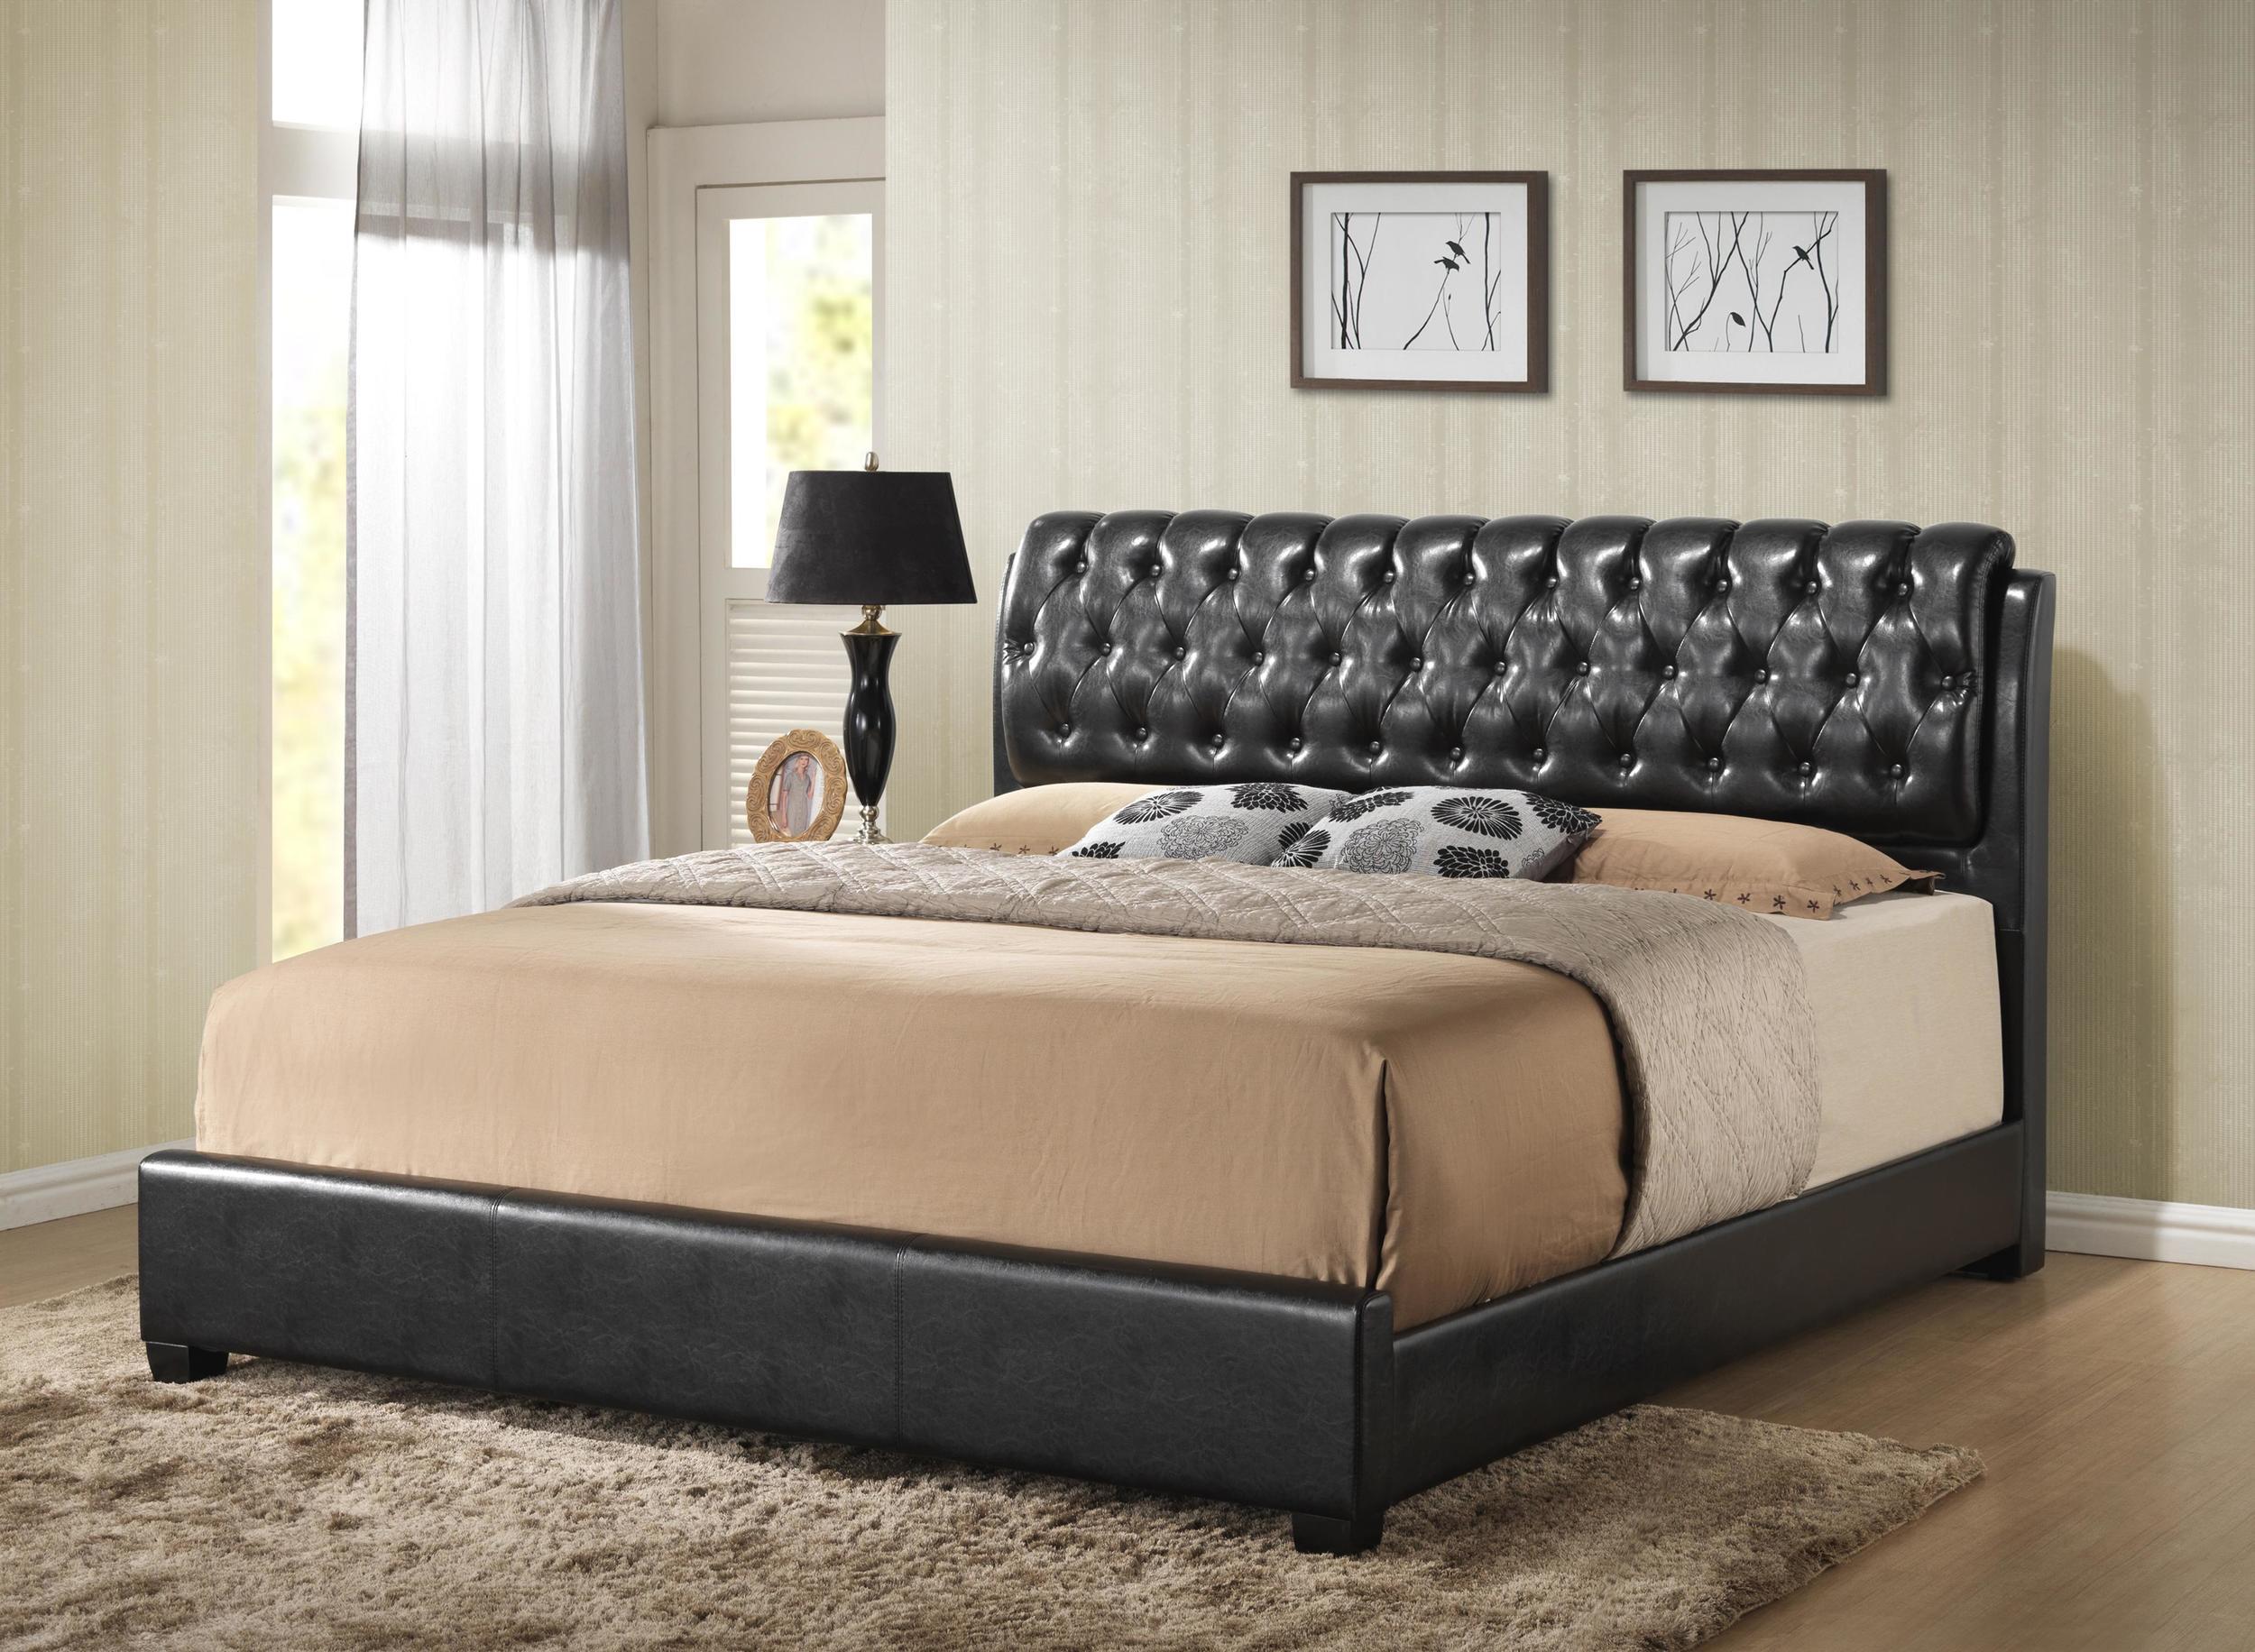 

    
MYCO Furniture 2956K-BK Barnes Black Eco Leather King Platform Bedroom Set 4Pcs
